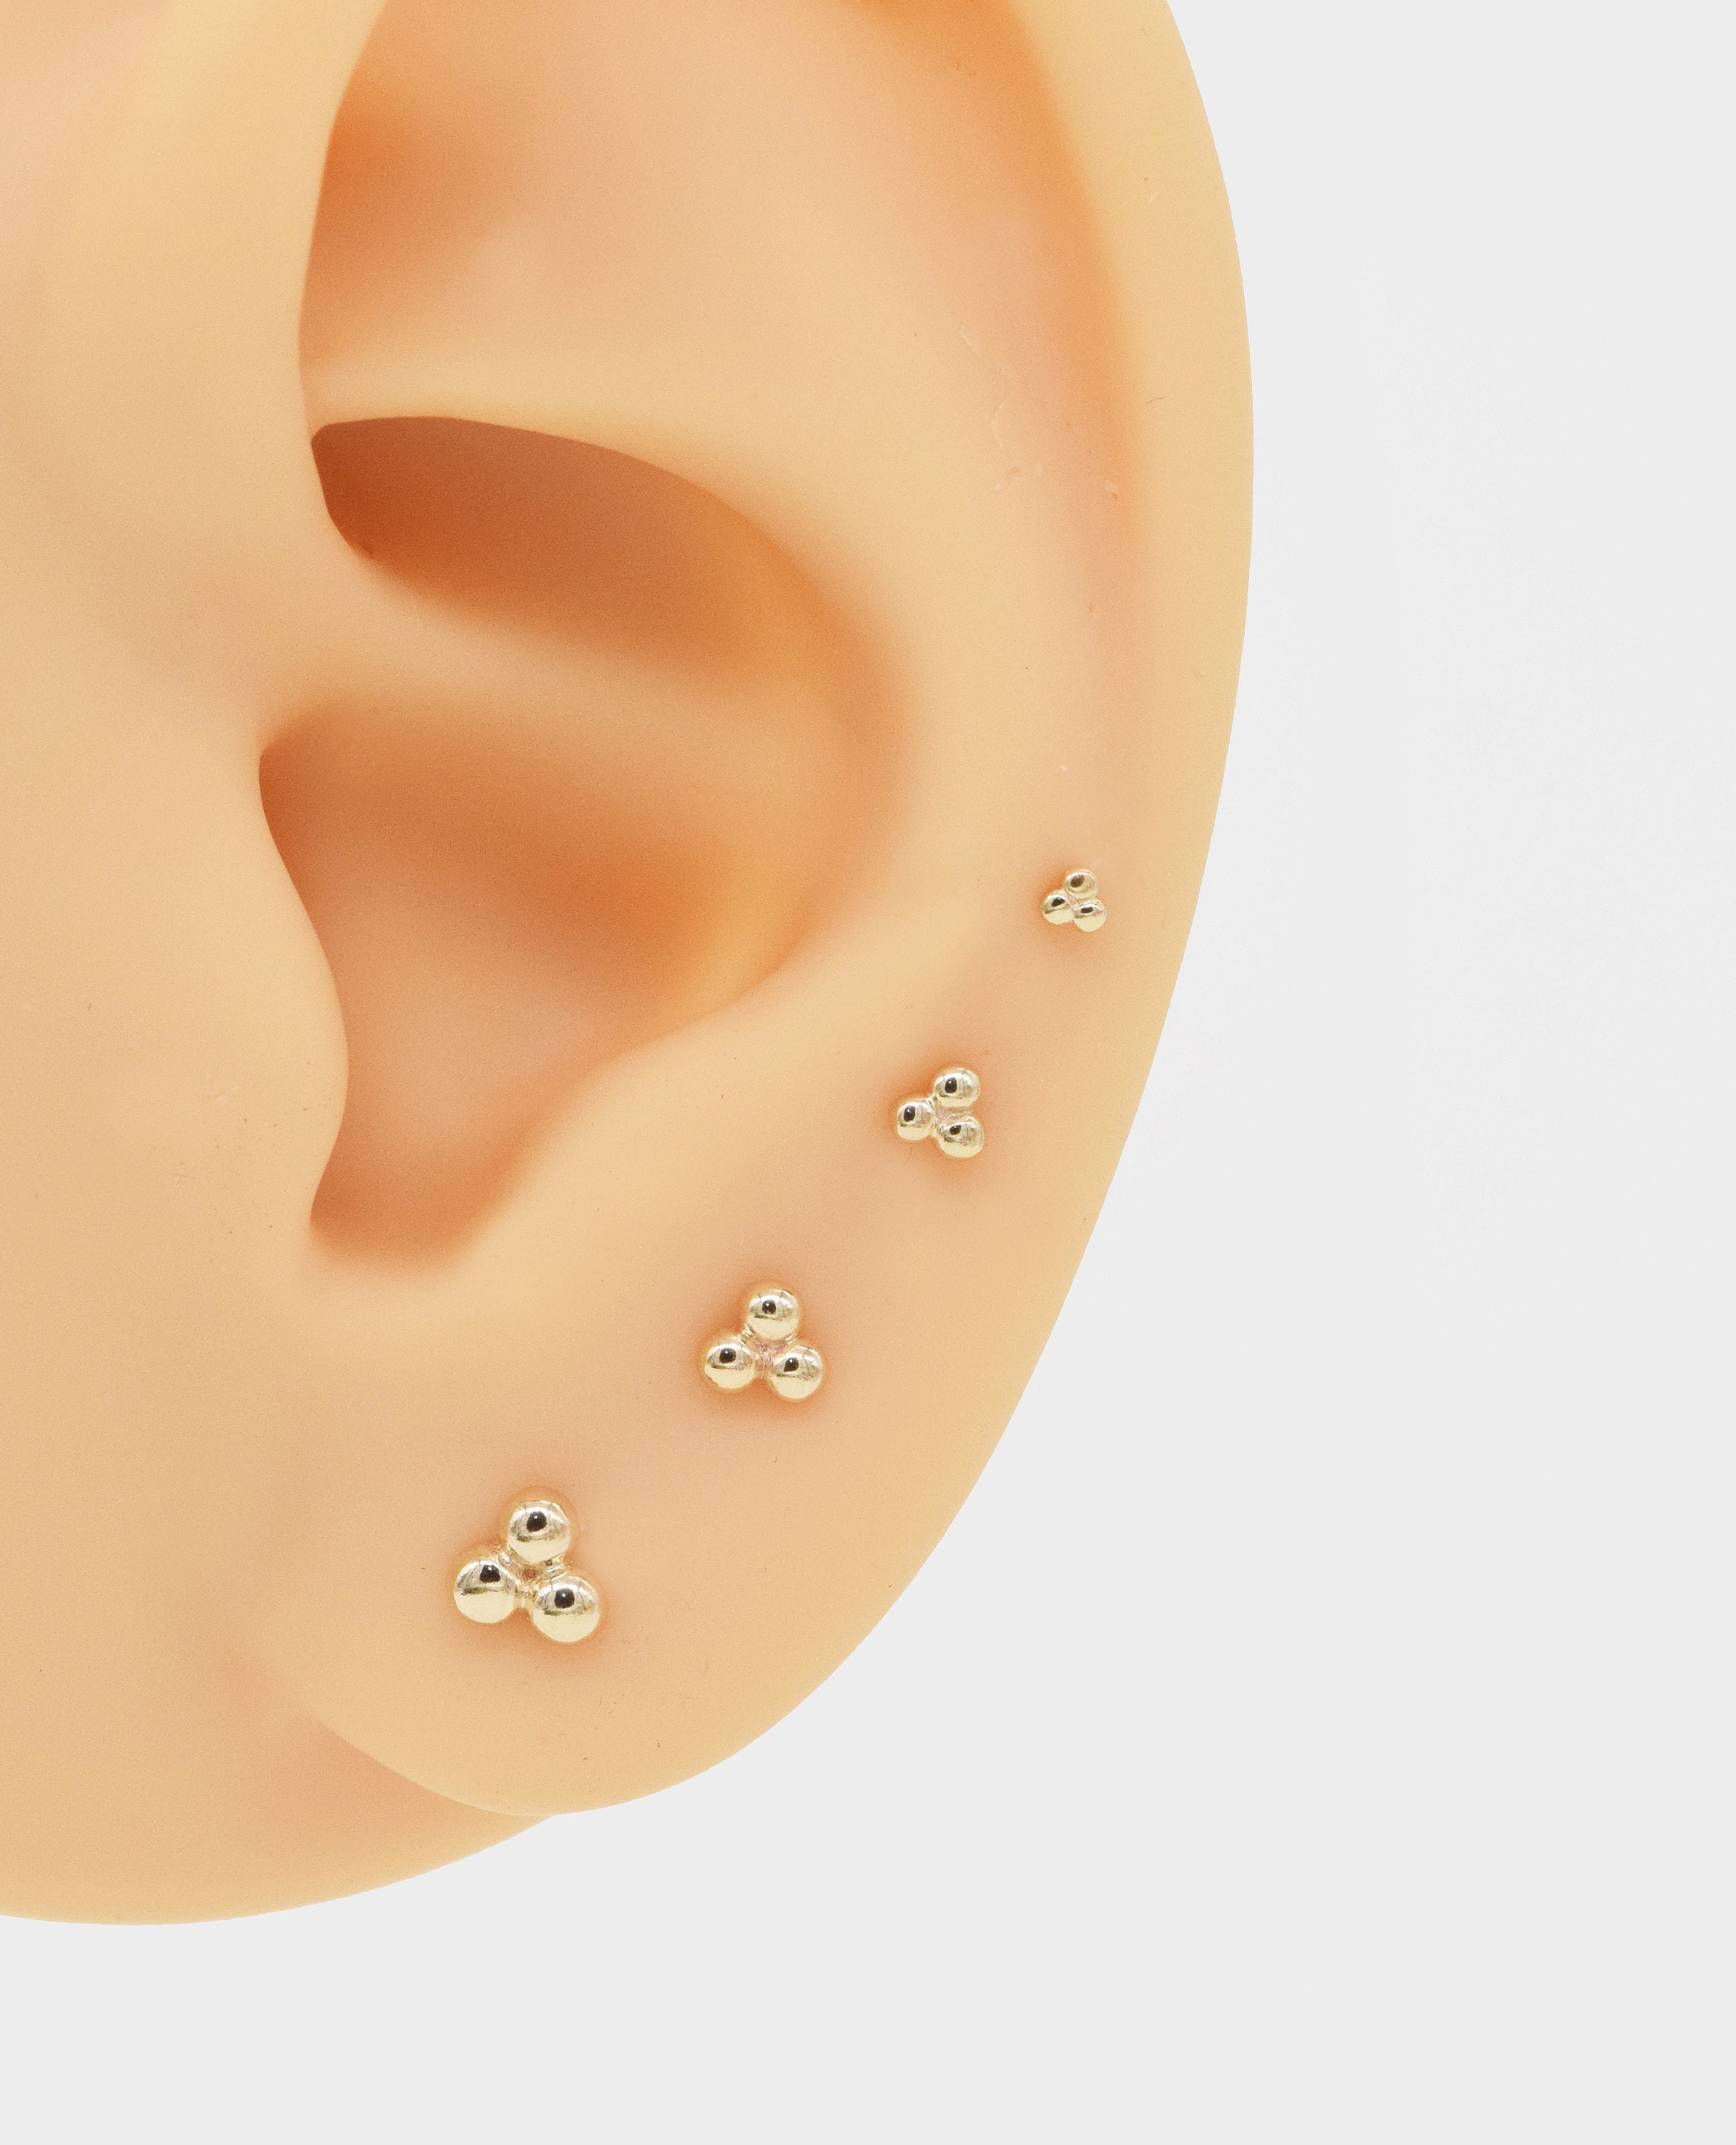 Earring Backs 14k Gold 7mm 1 Pair – FindingKing